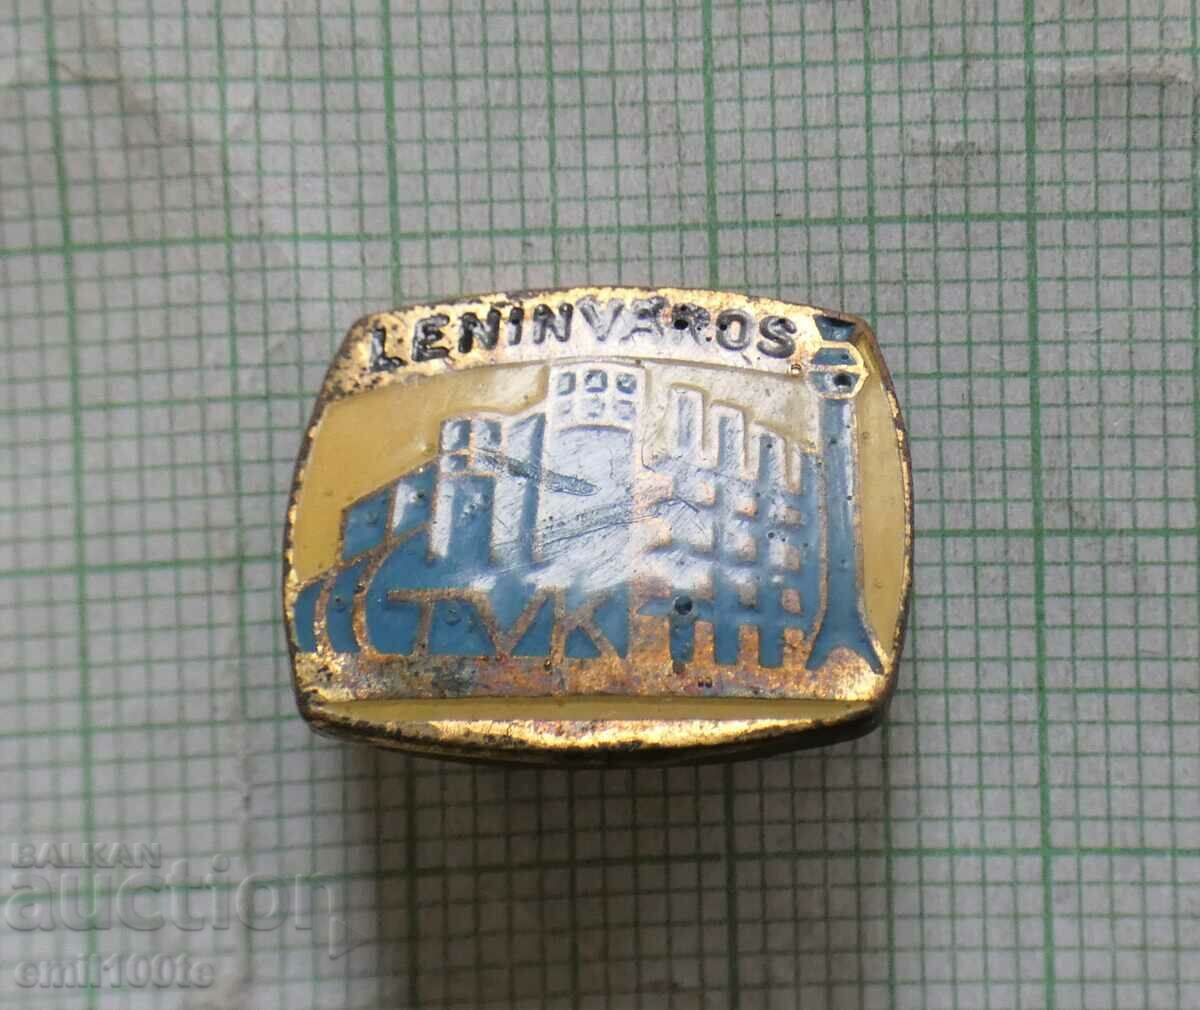 Insigna- Leninvaros Leningrad în Ungaria